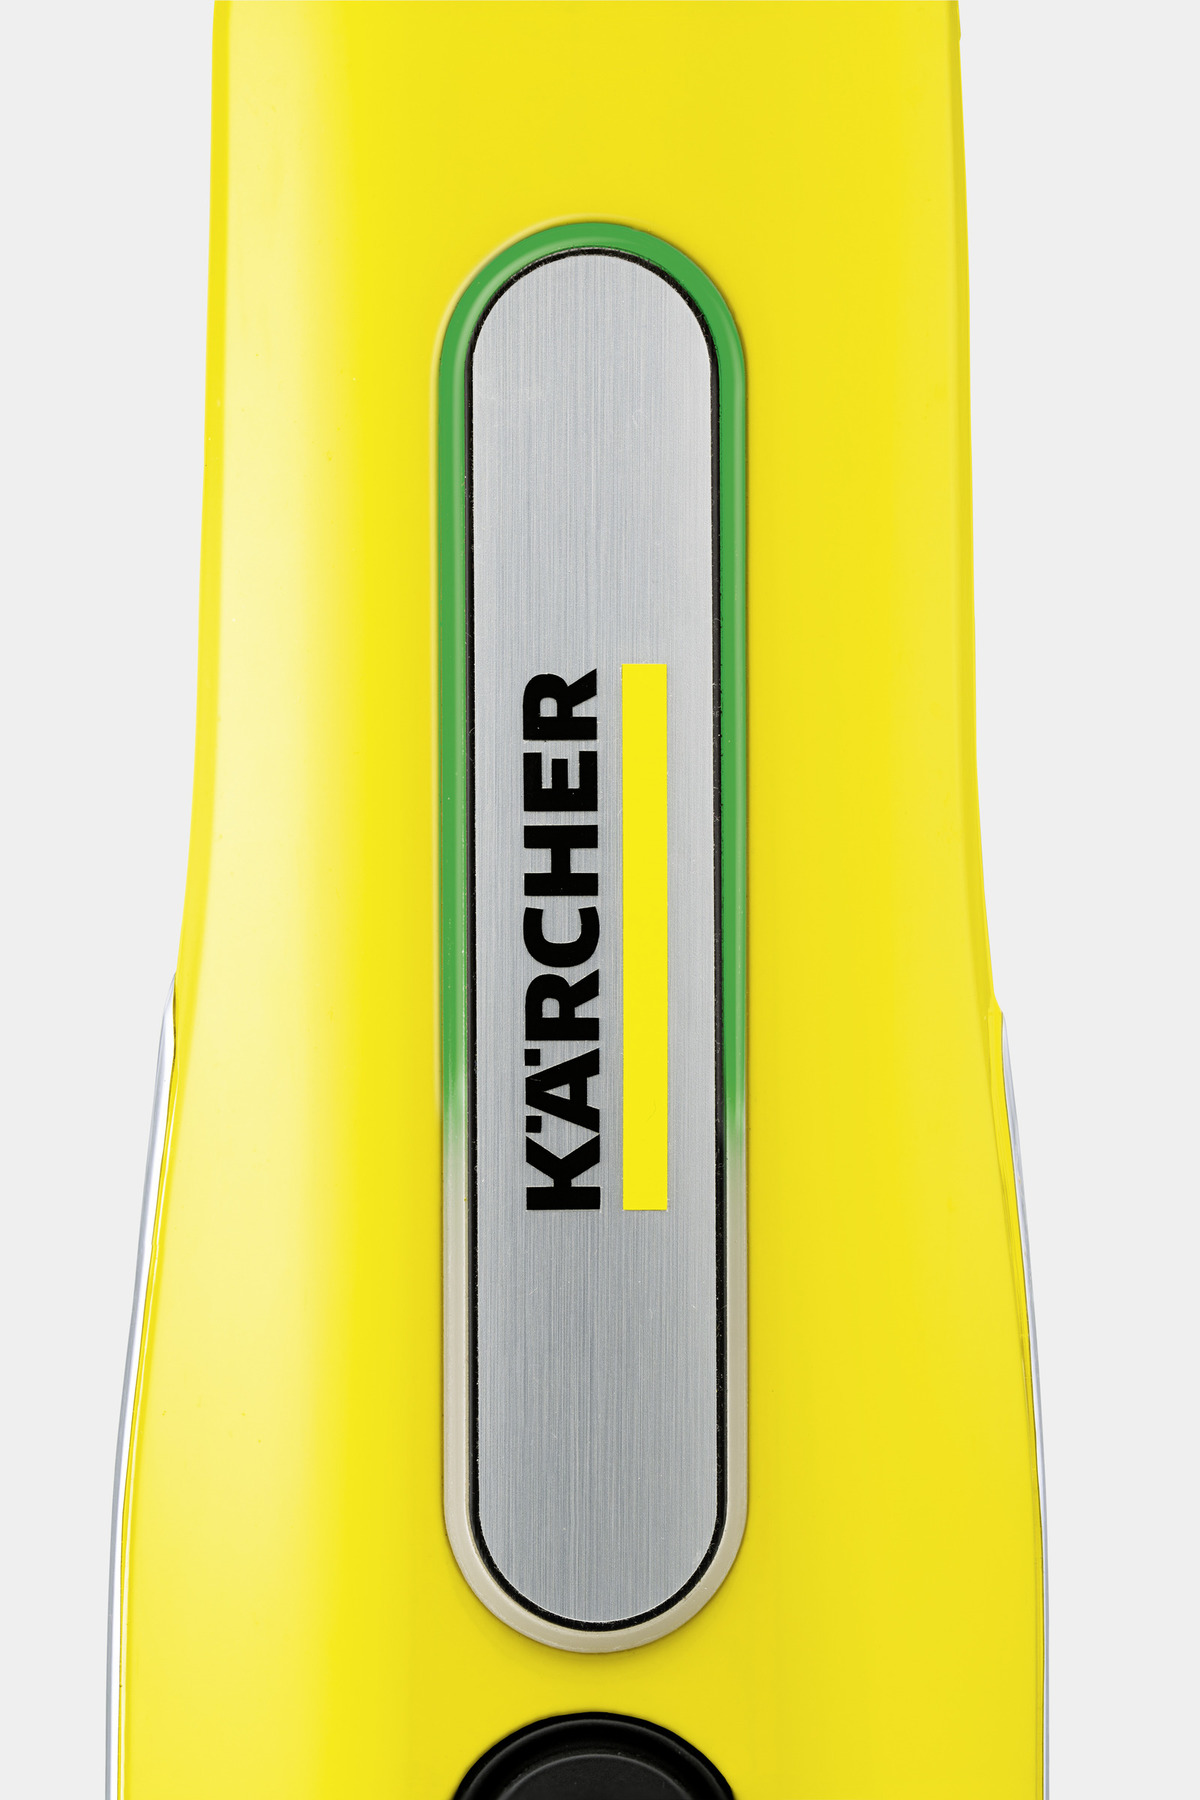 Limpiador de vapor SC 3 Easyfix - KARCHER 1.513-110.0 - SIA Suministros